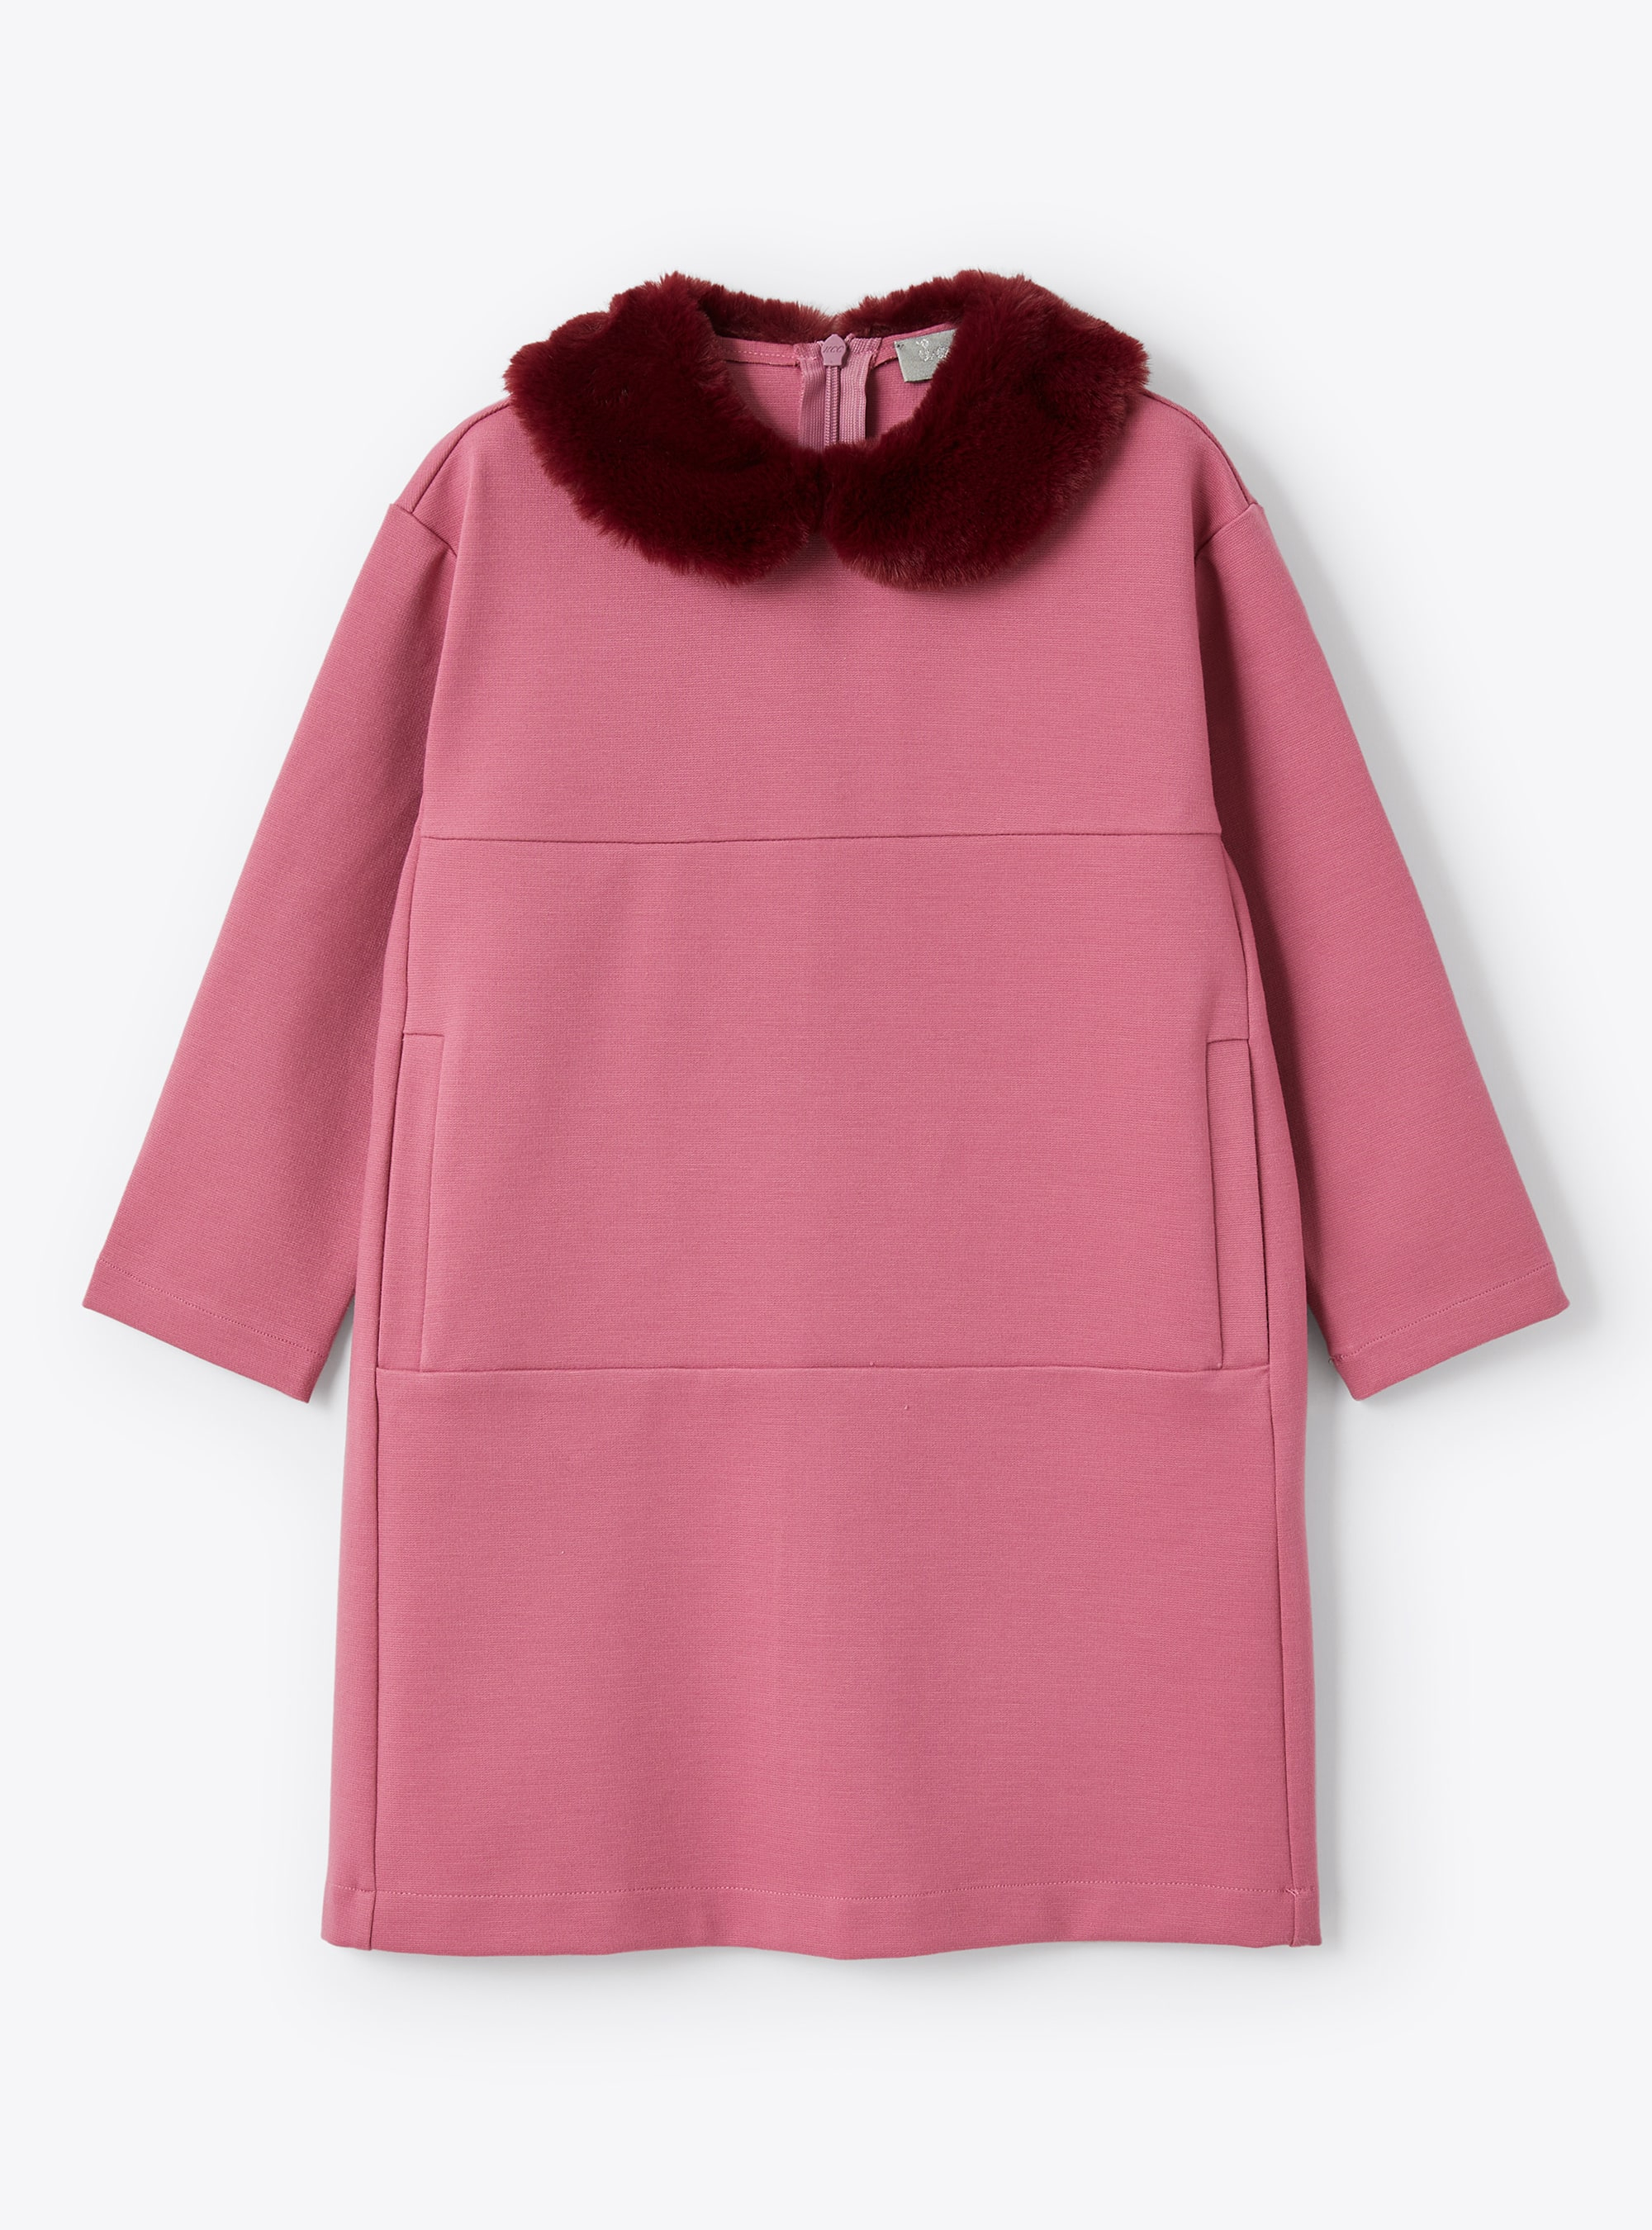 Pinkfarbenes Kleid mit Kunstfellkragen - Kleider - Il Gufo